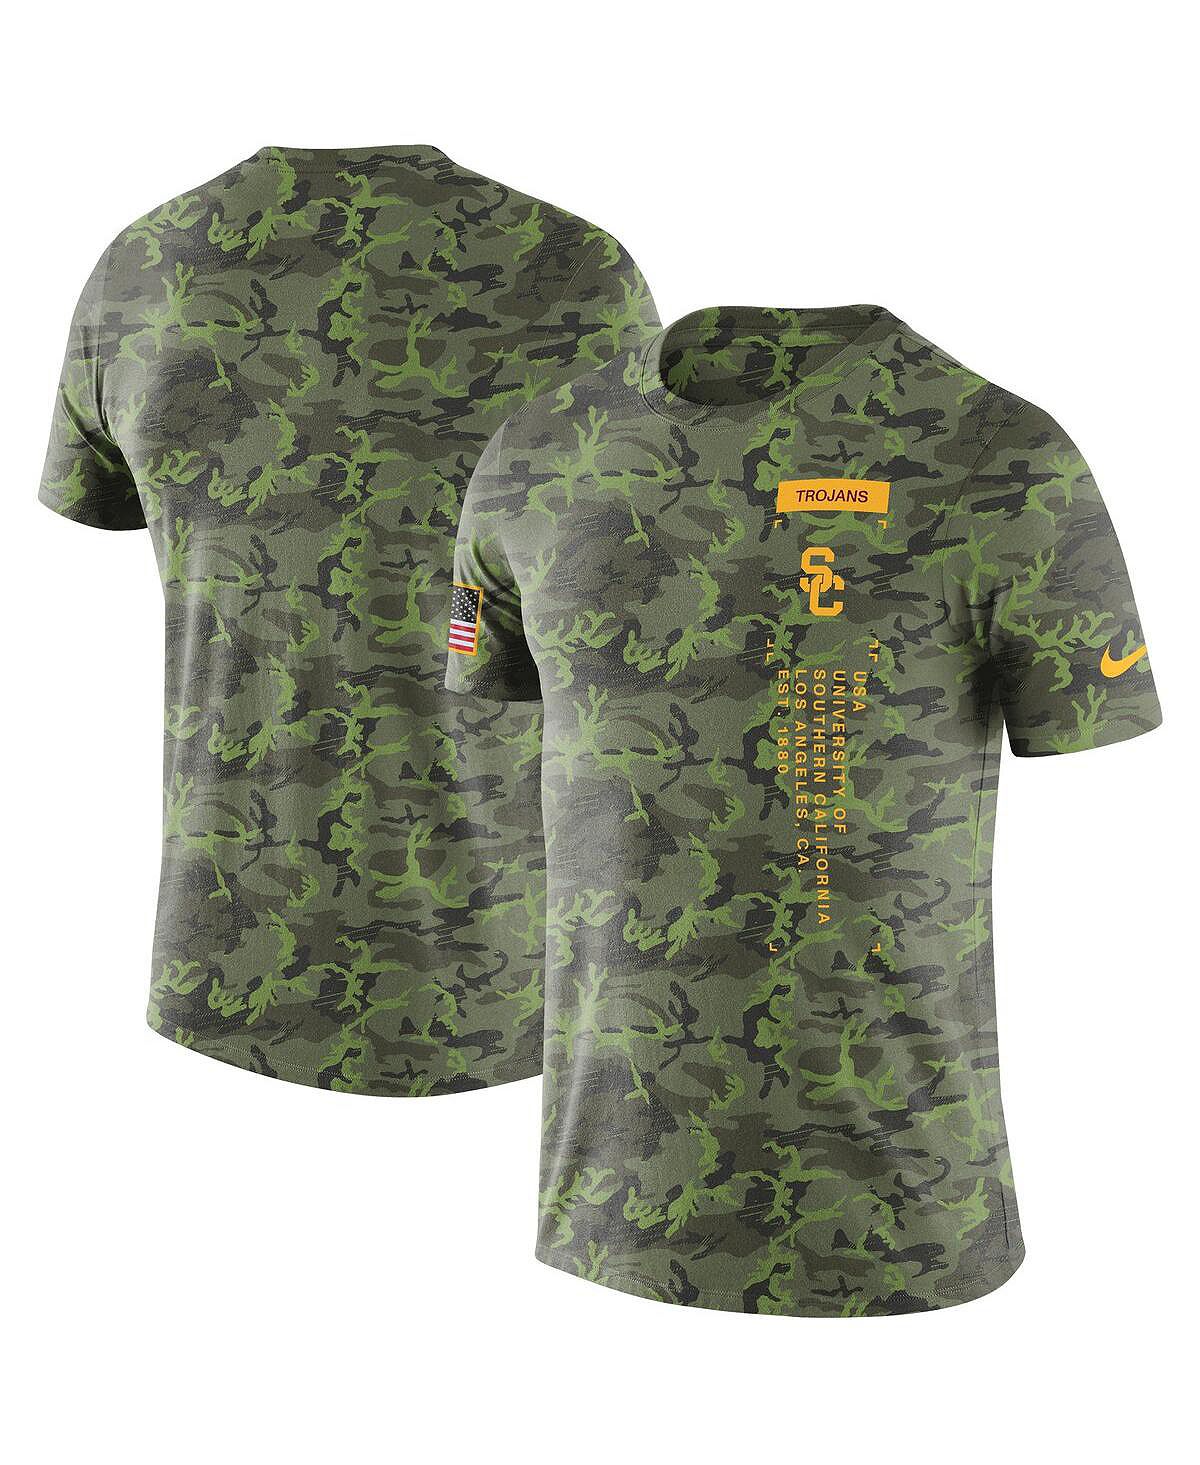 Мужская камуфляжная футболка USC Trojans в военном стиле Nike